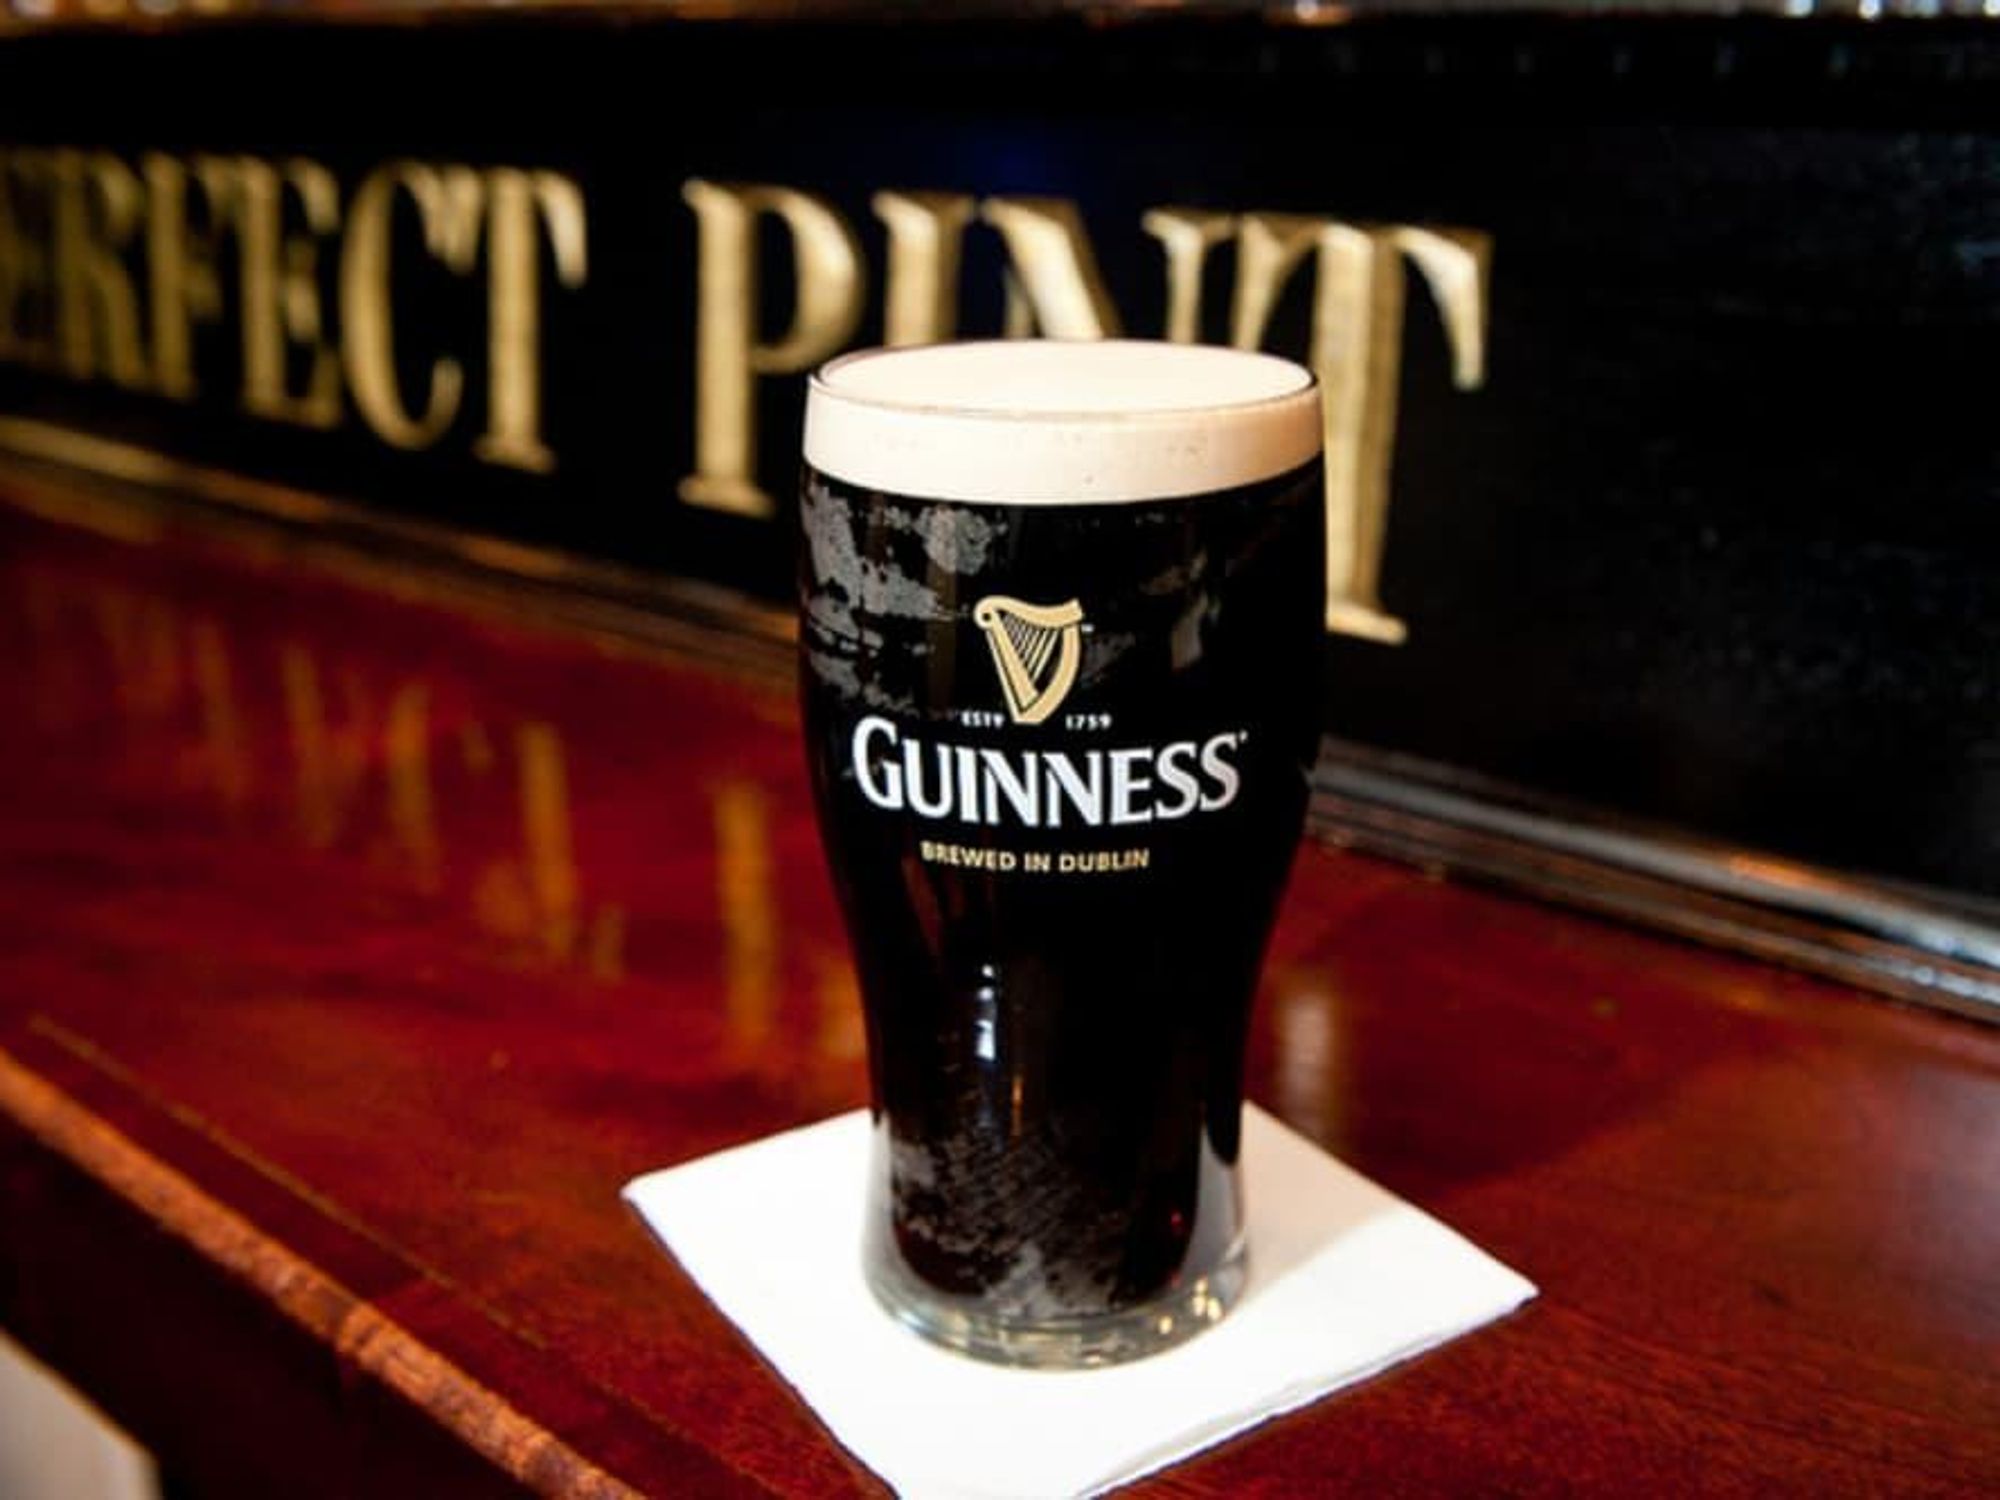 Guinness beer